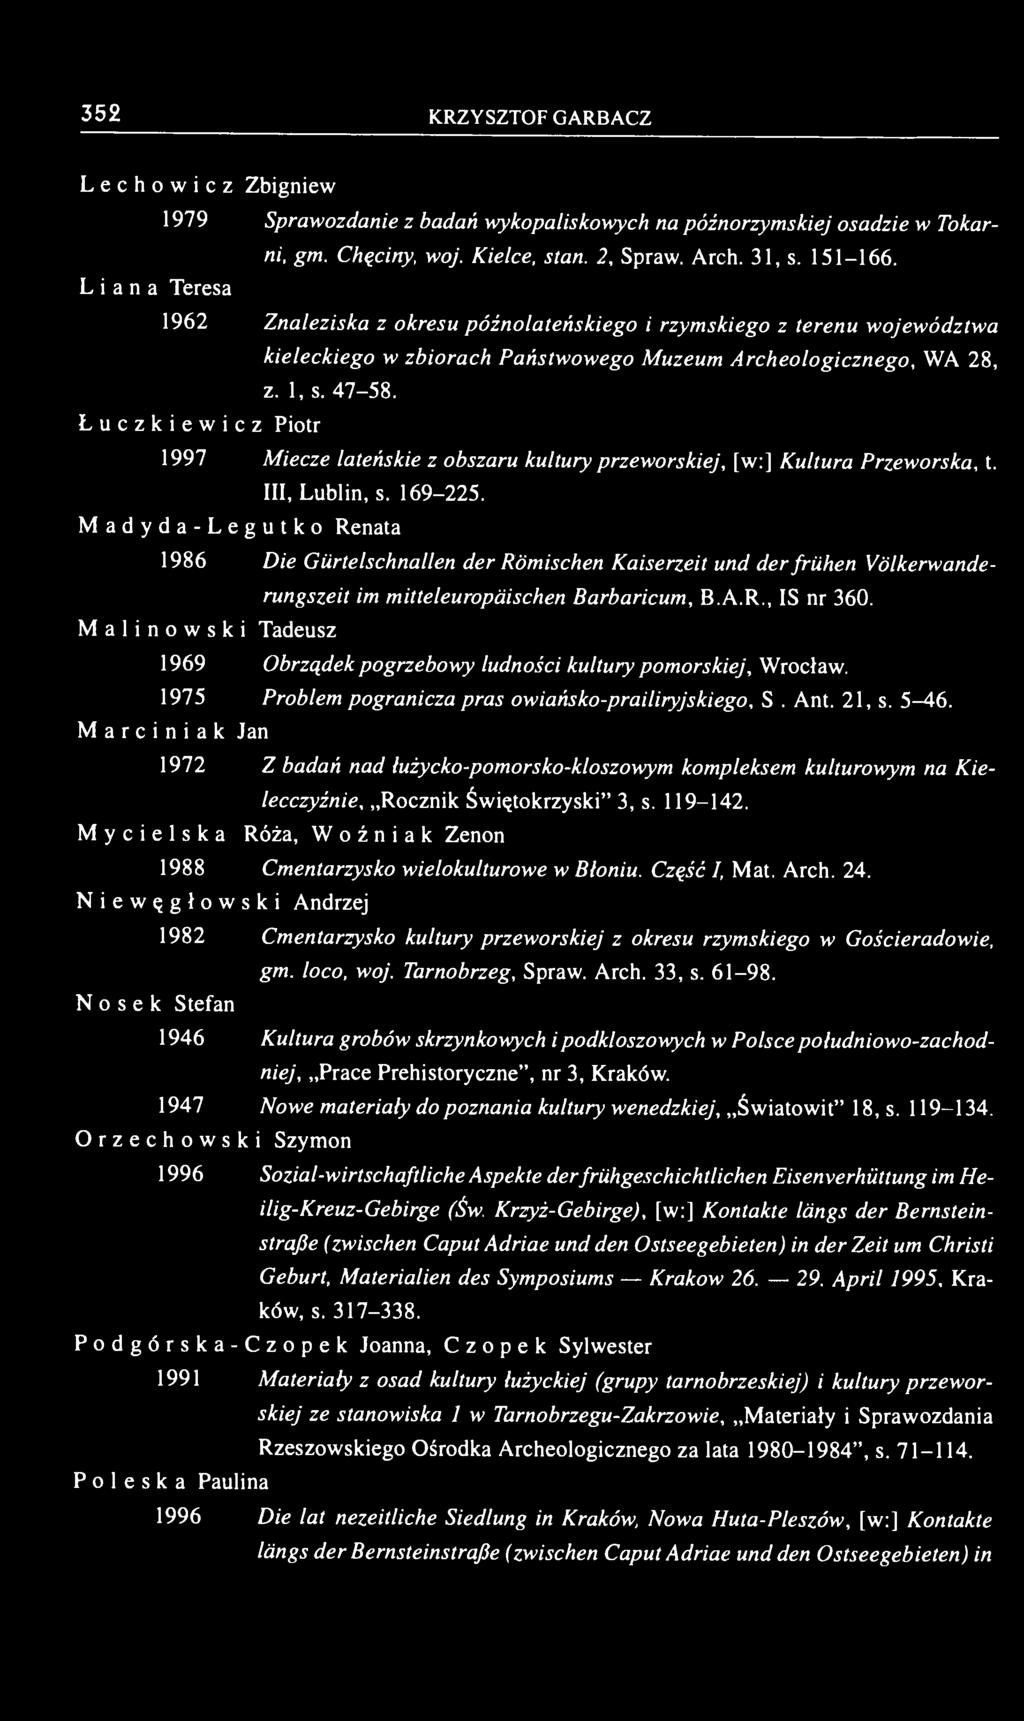 Łuczkiewicz Piotr 1997 Miecze lateńskie z obszaru kultury przeworskiej, [w:] Kultura Przeworska, t. III, Lublin, s. 169-225.